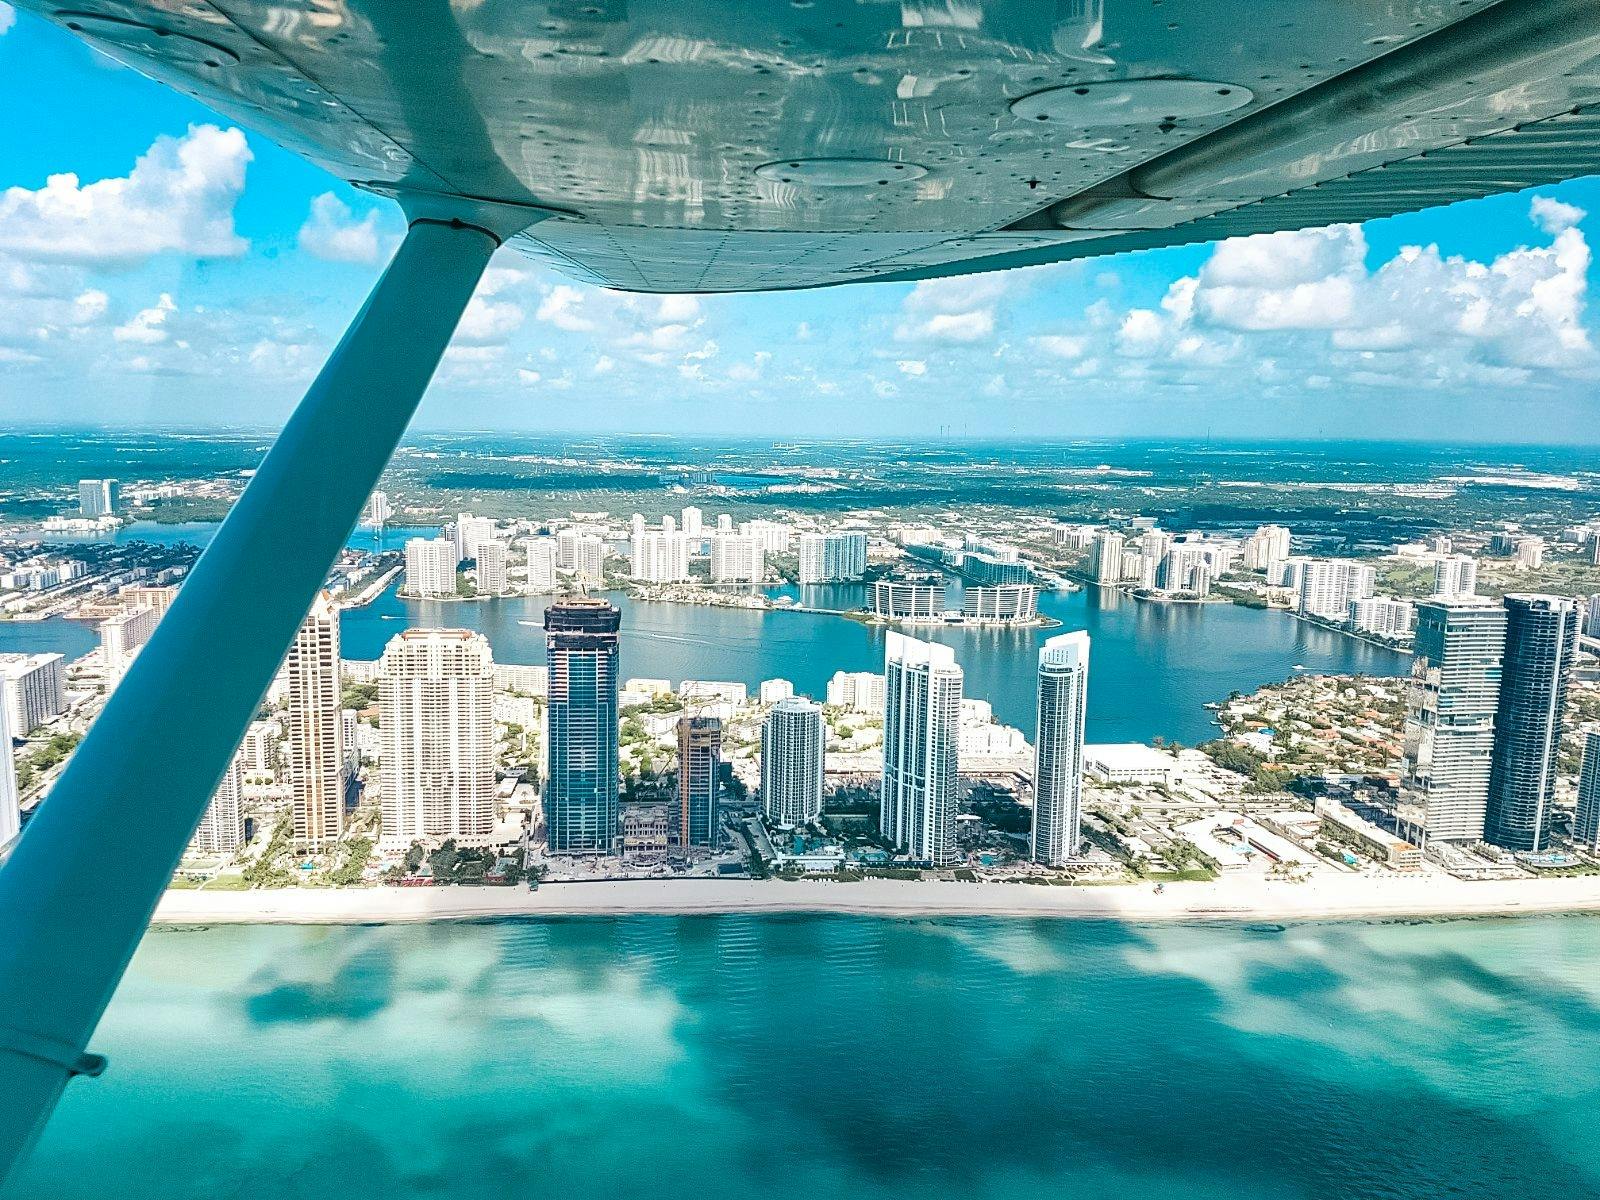 40-minütiger South Beach-Privatflug in Miami